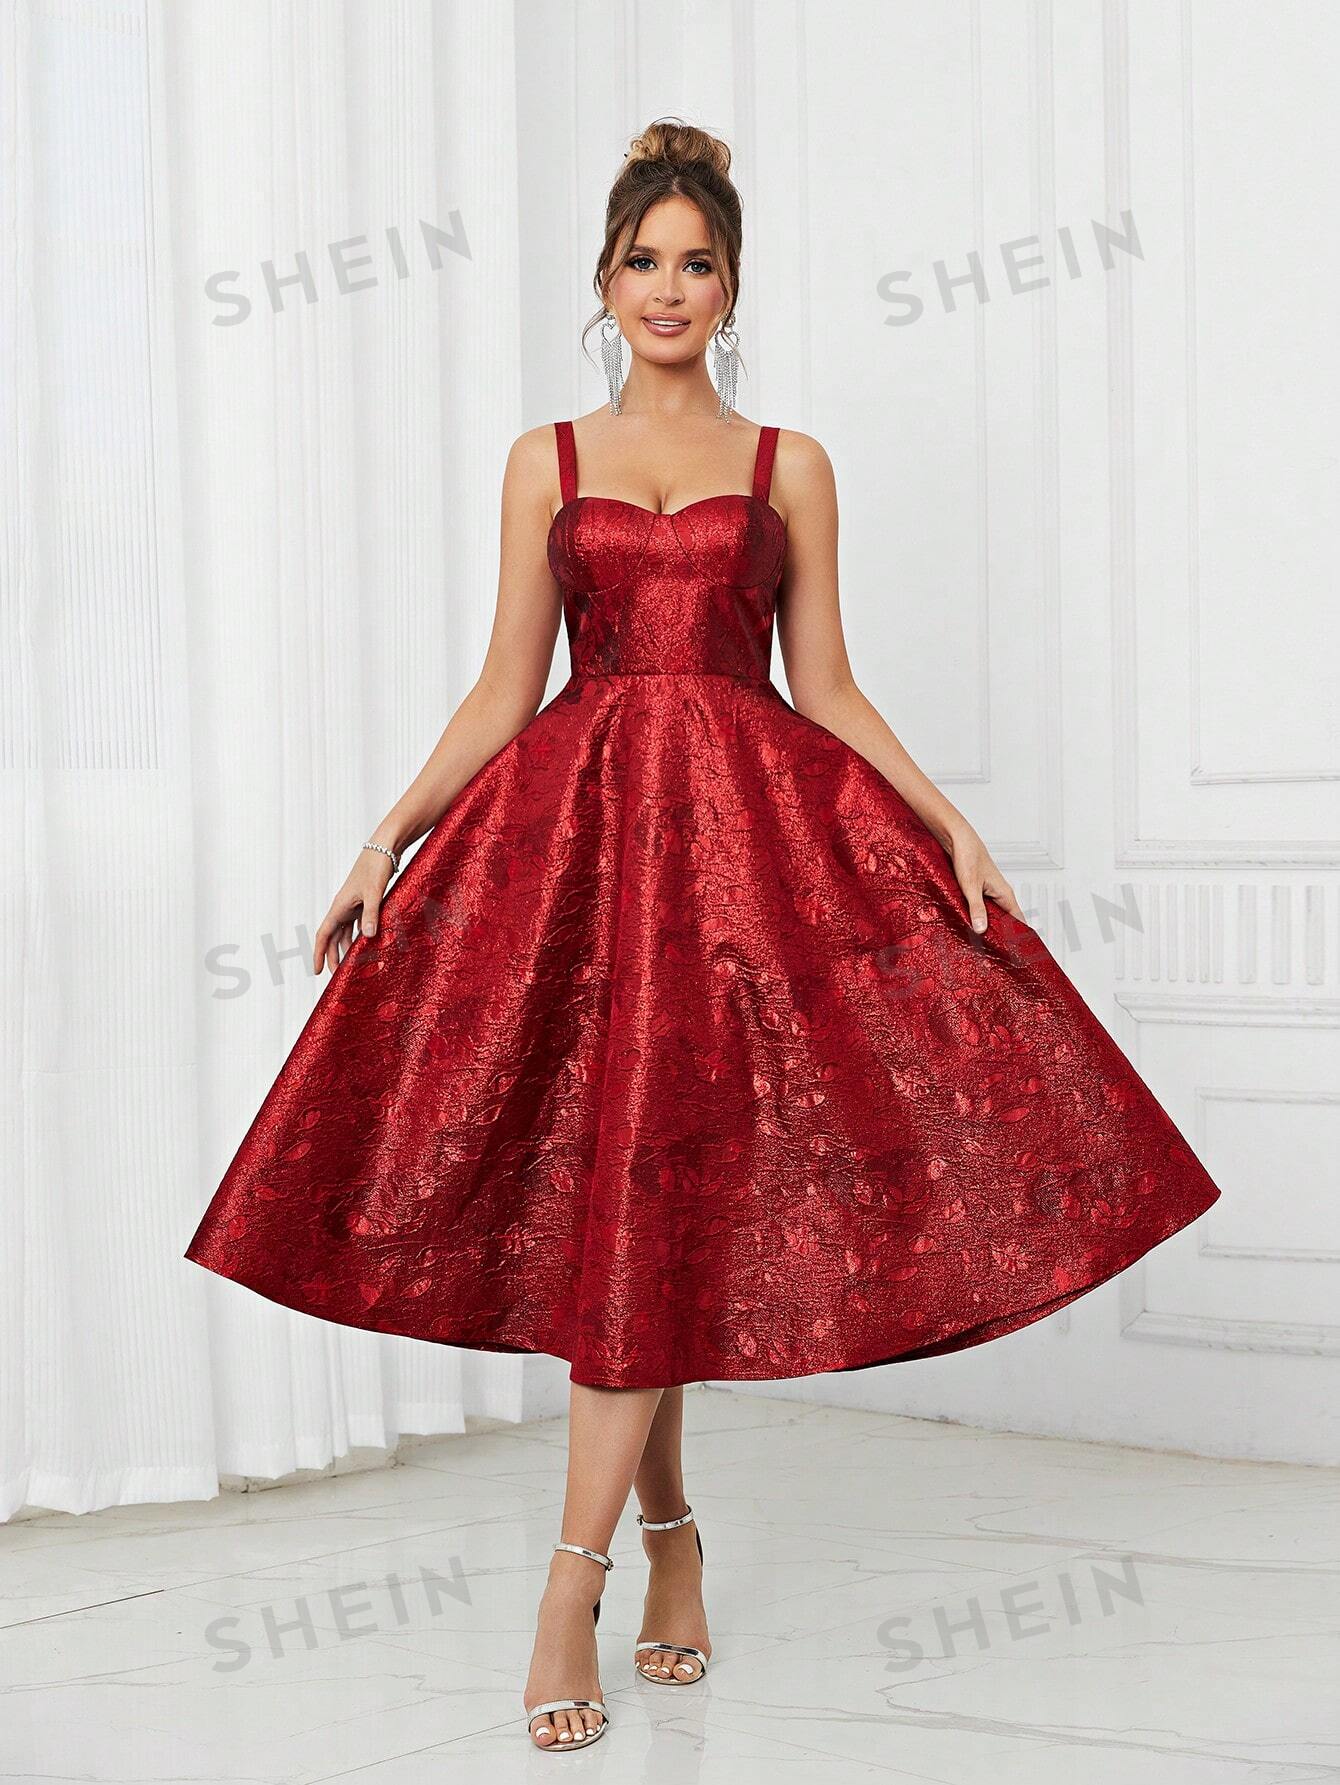 SHEIN Belle Элегантное и романтичное красное роскошное жаккардовое атласное платье с чашечкой на груди в елочку с узкой спинкой на шнуровке трапециевидной формы, красный платье credo с узором елочка